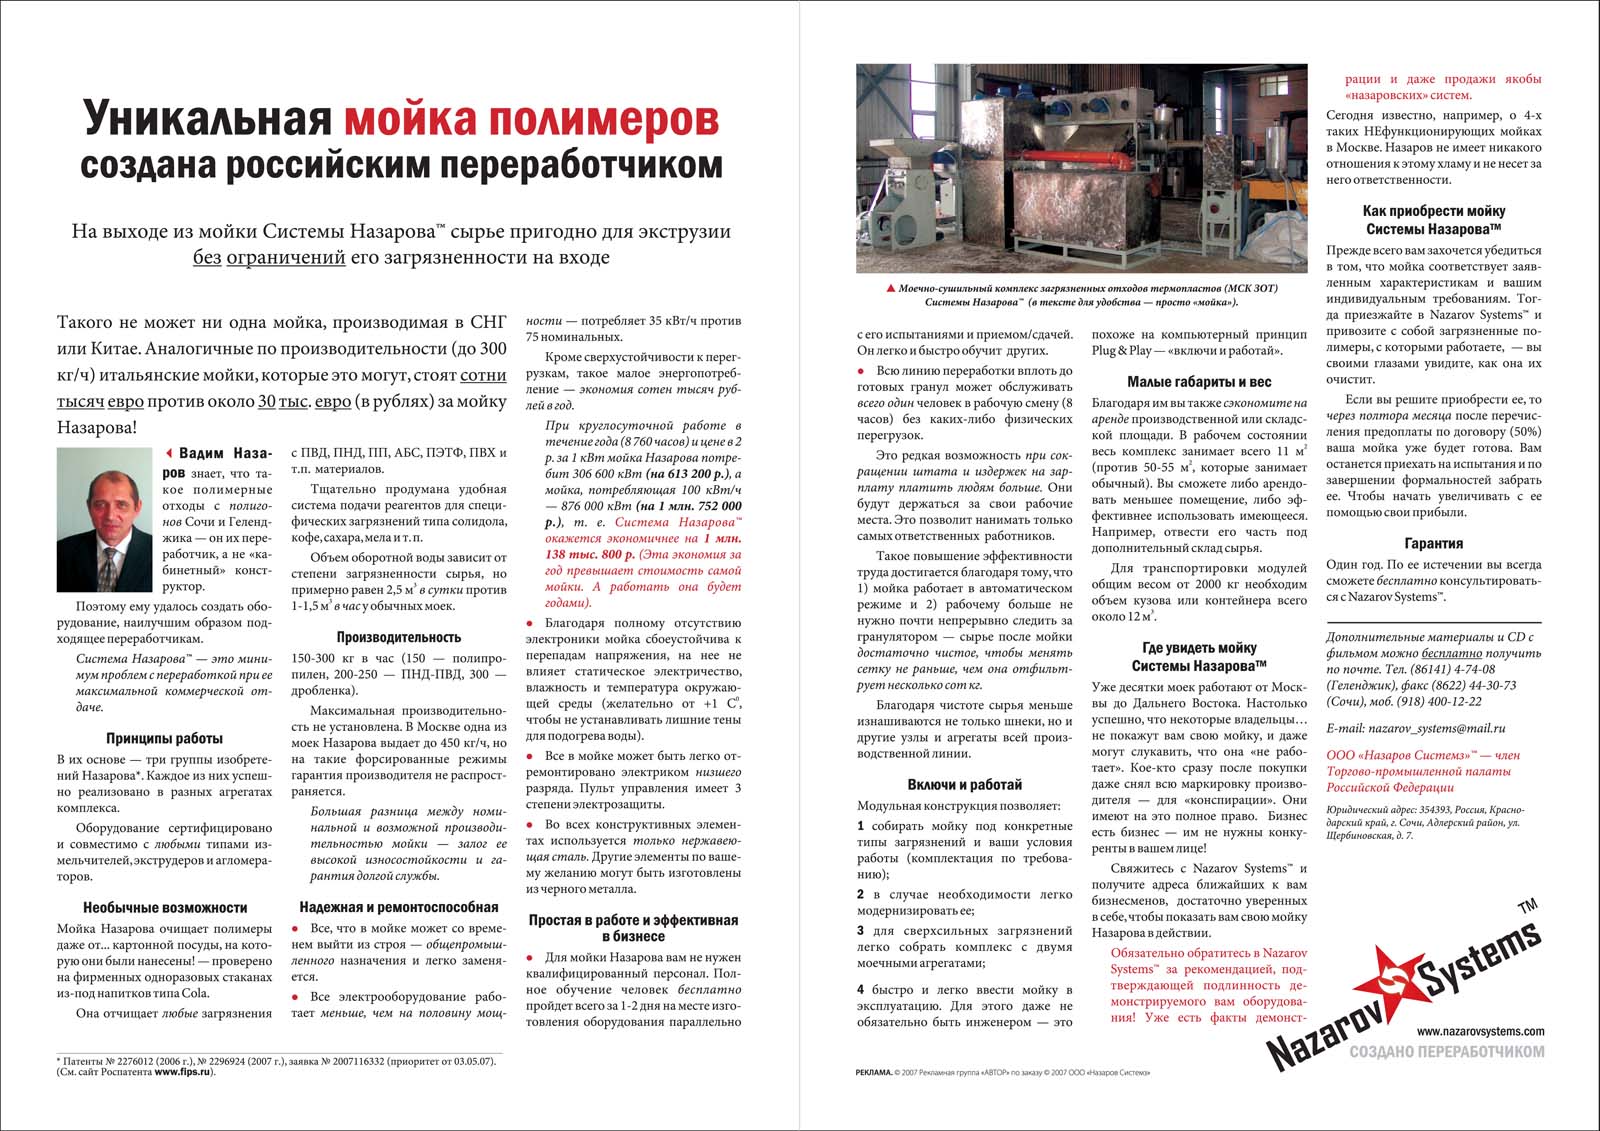 Печатная реклама, Денис Богомолов, мойка полимеров Назарова